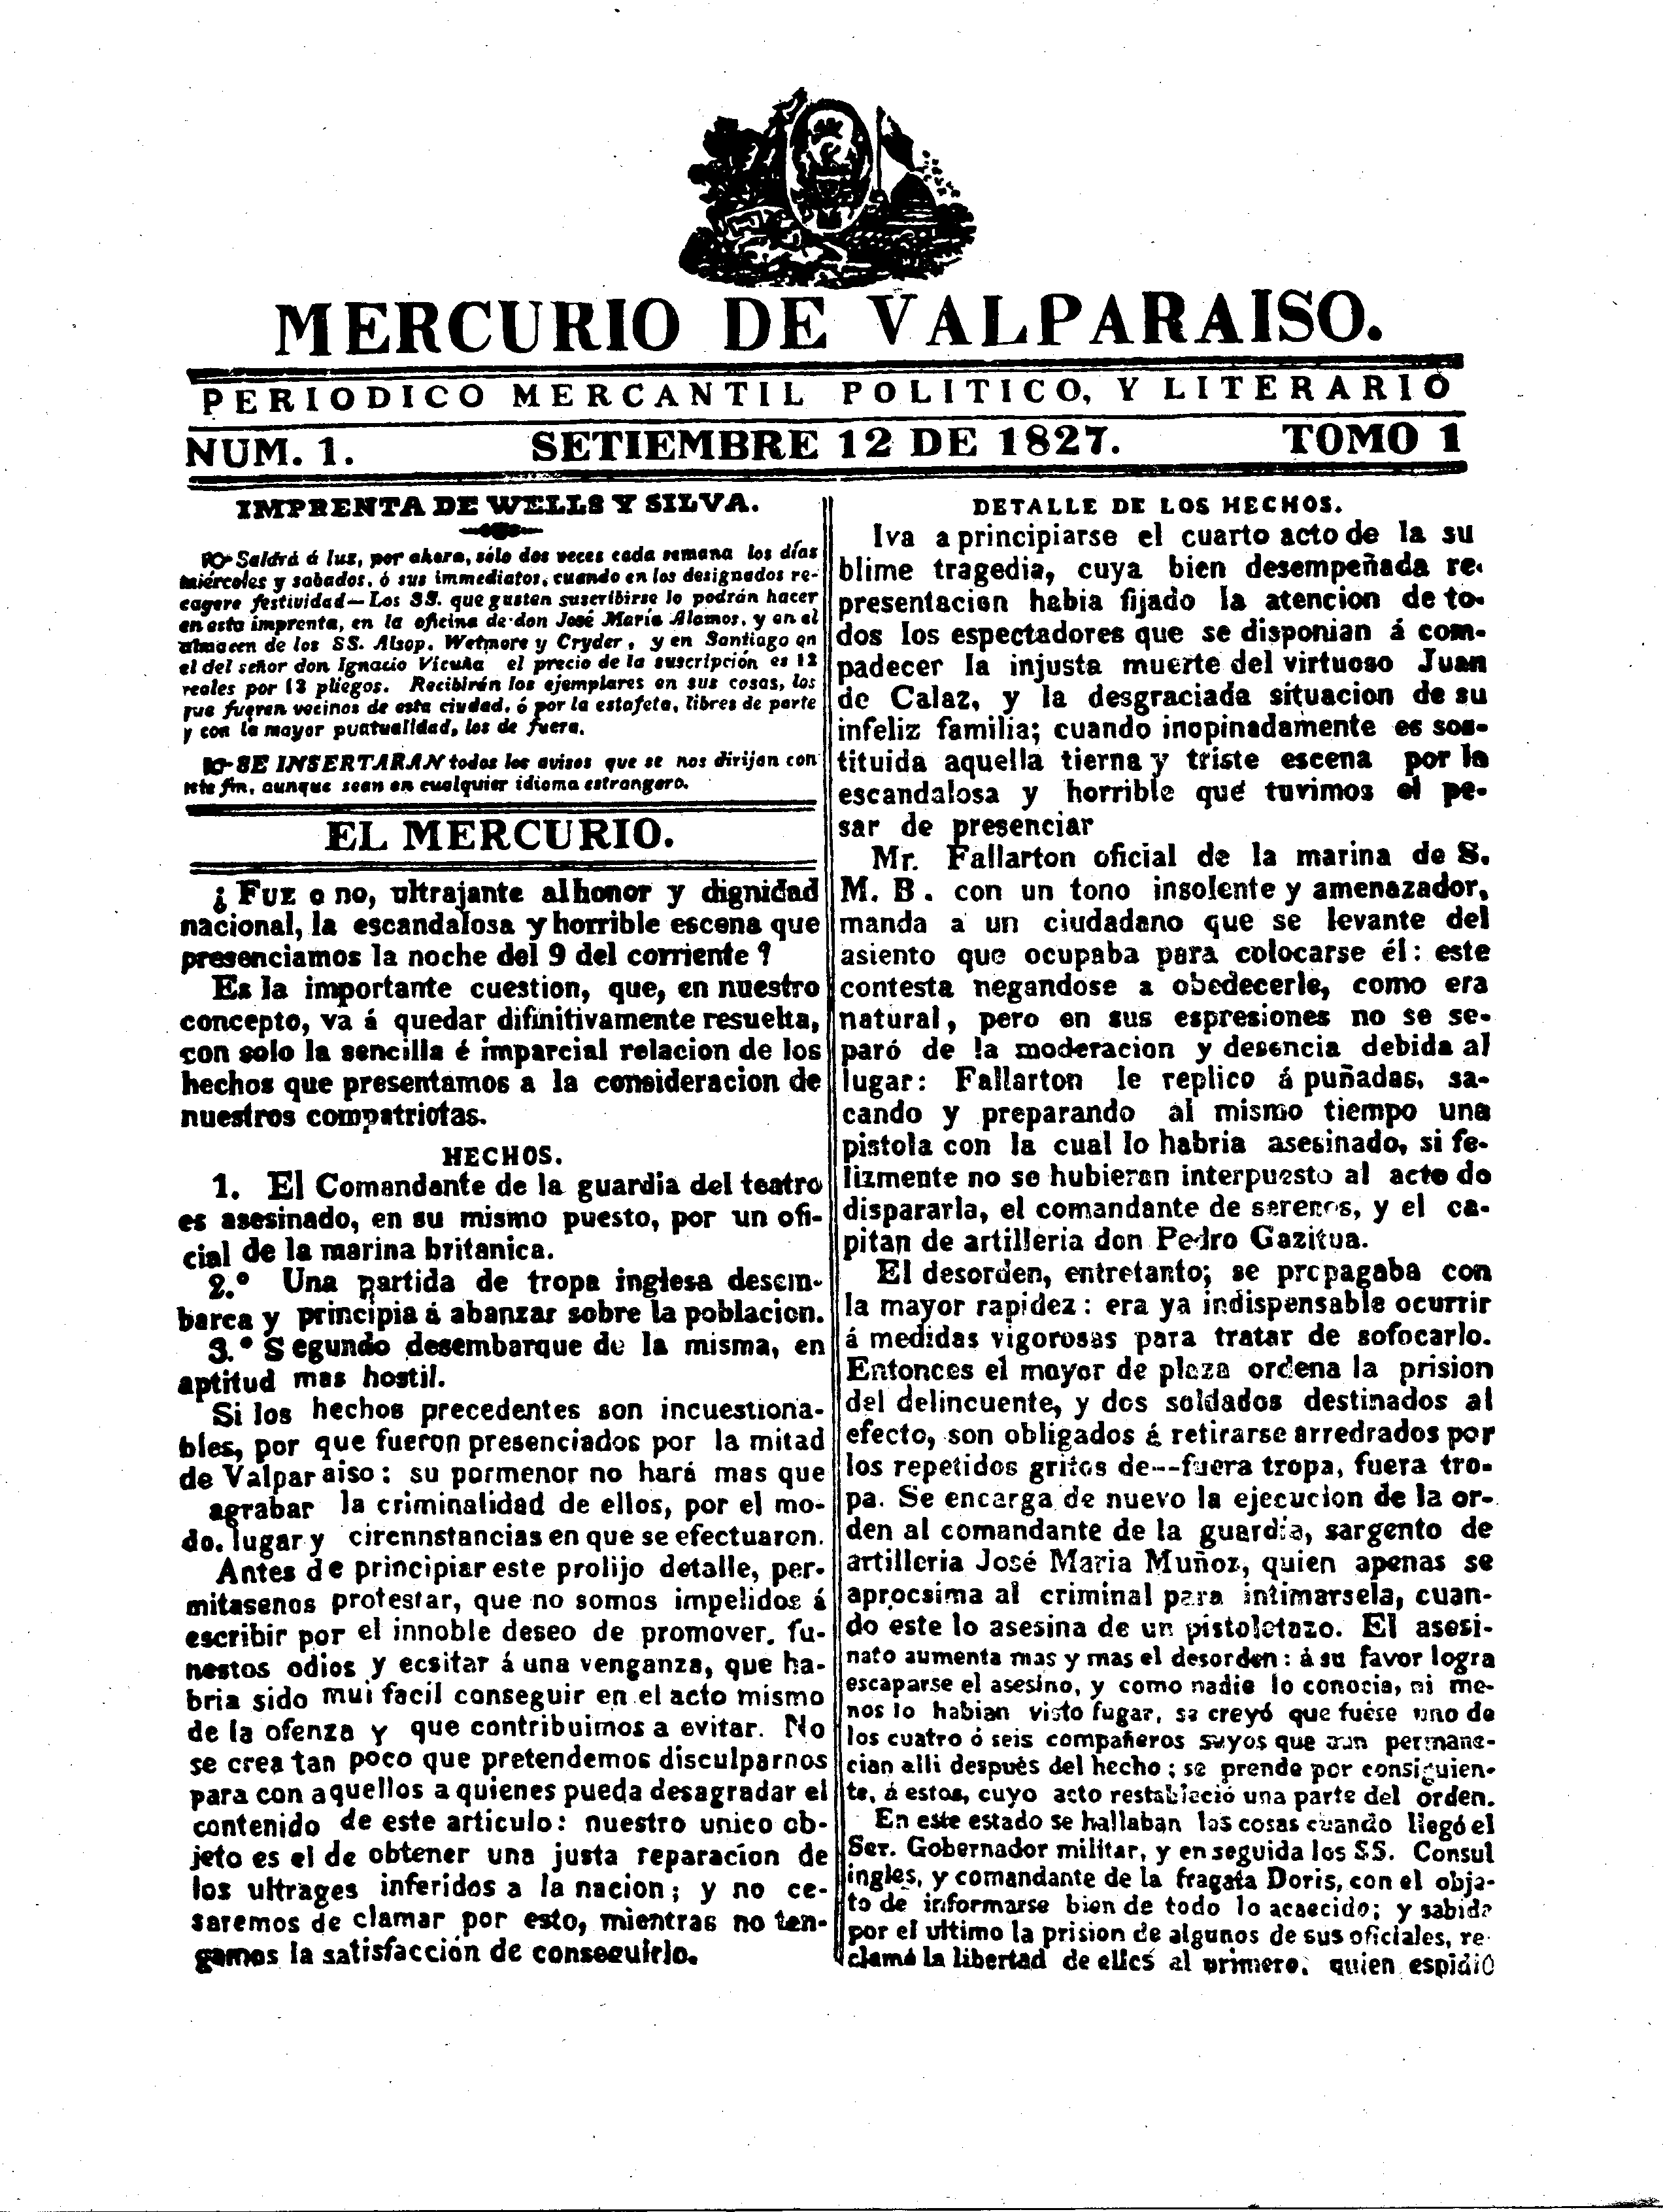 El Mercurio de Valparaíso - Wikipedia, la enciclopedia libre